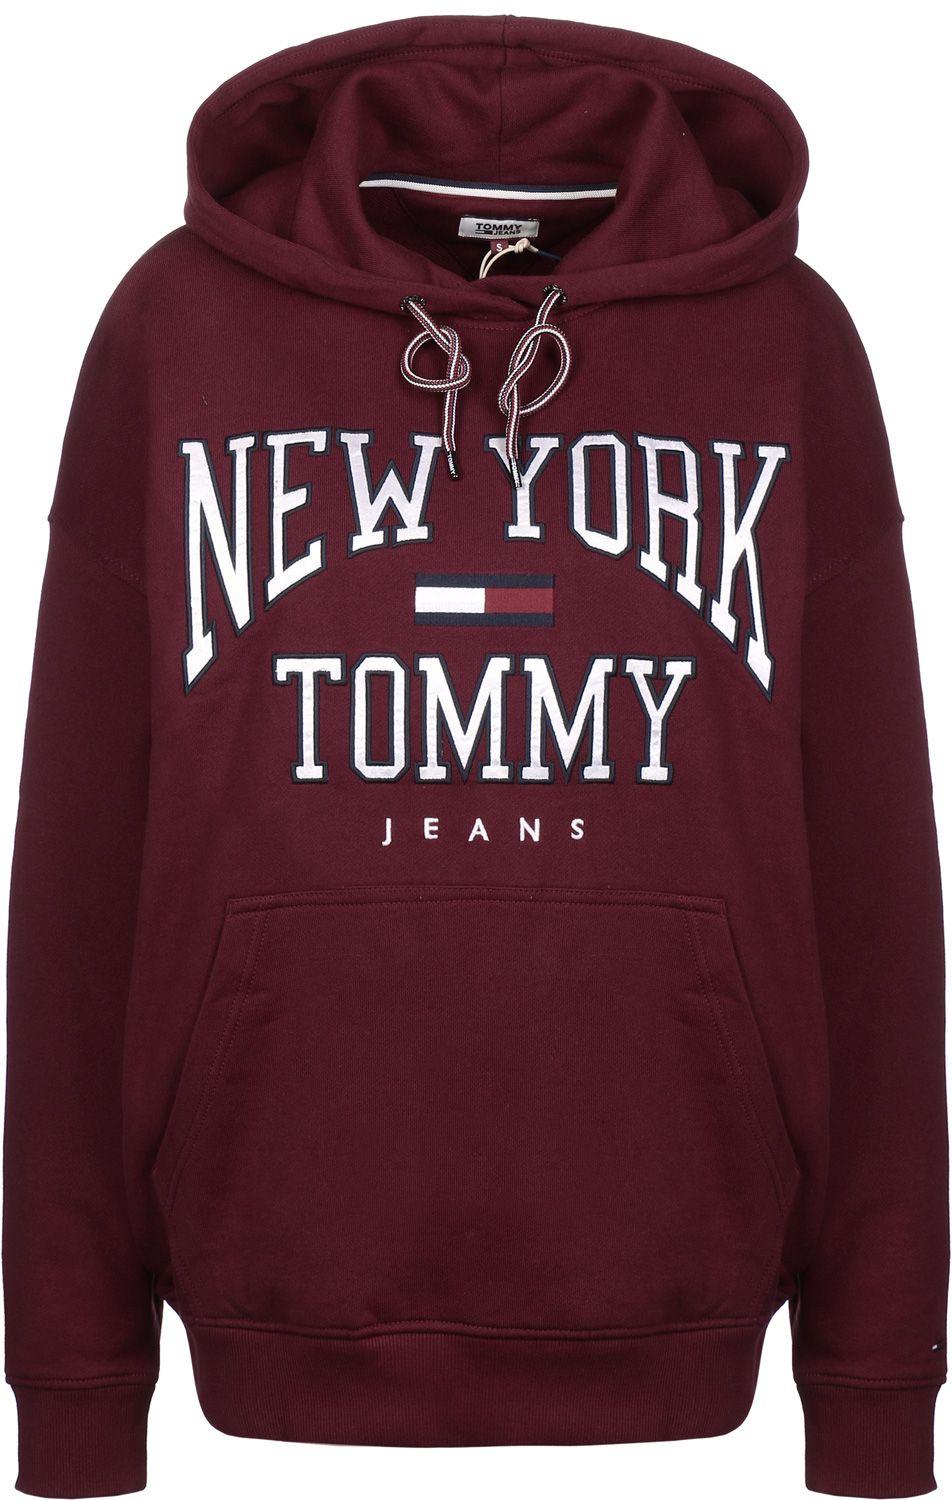 Boyfriend Logo - Tommy Jeans Boyfriend Logo W hoodie maroon